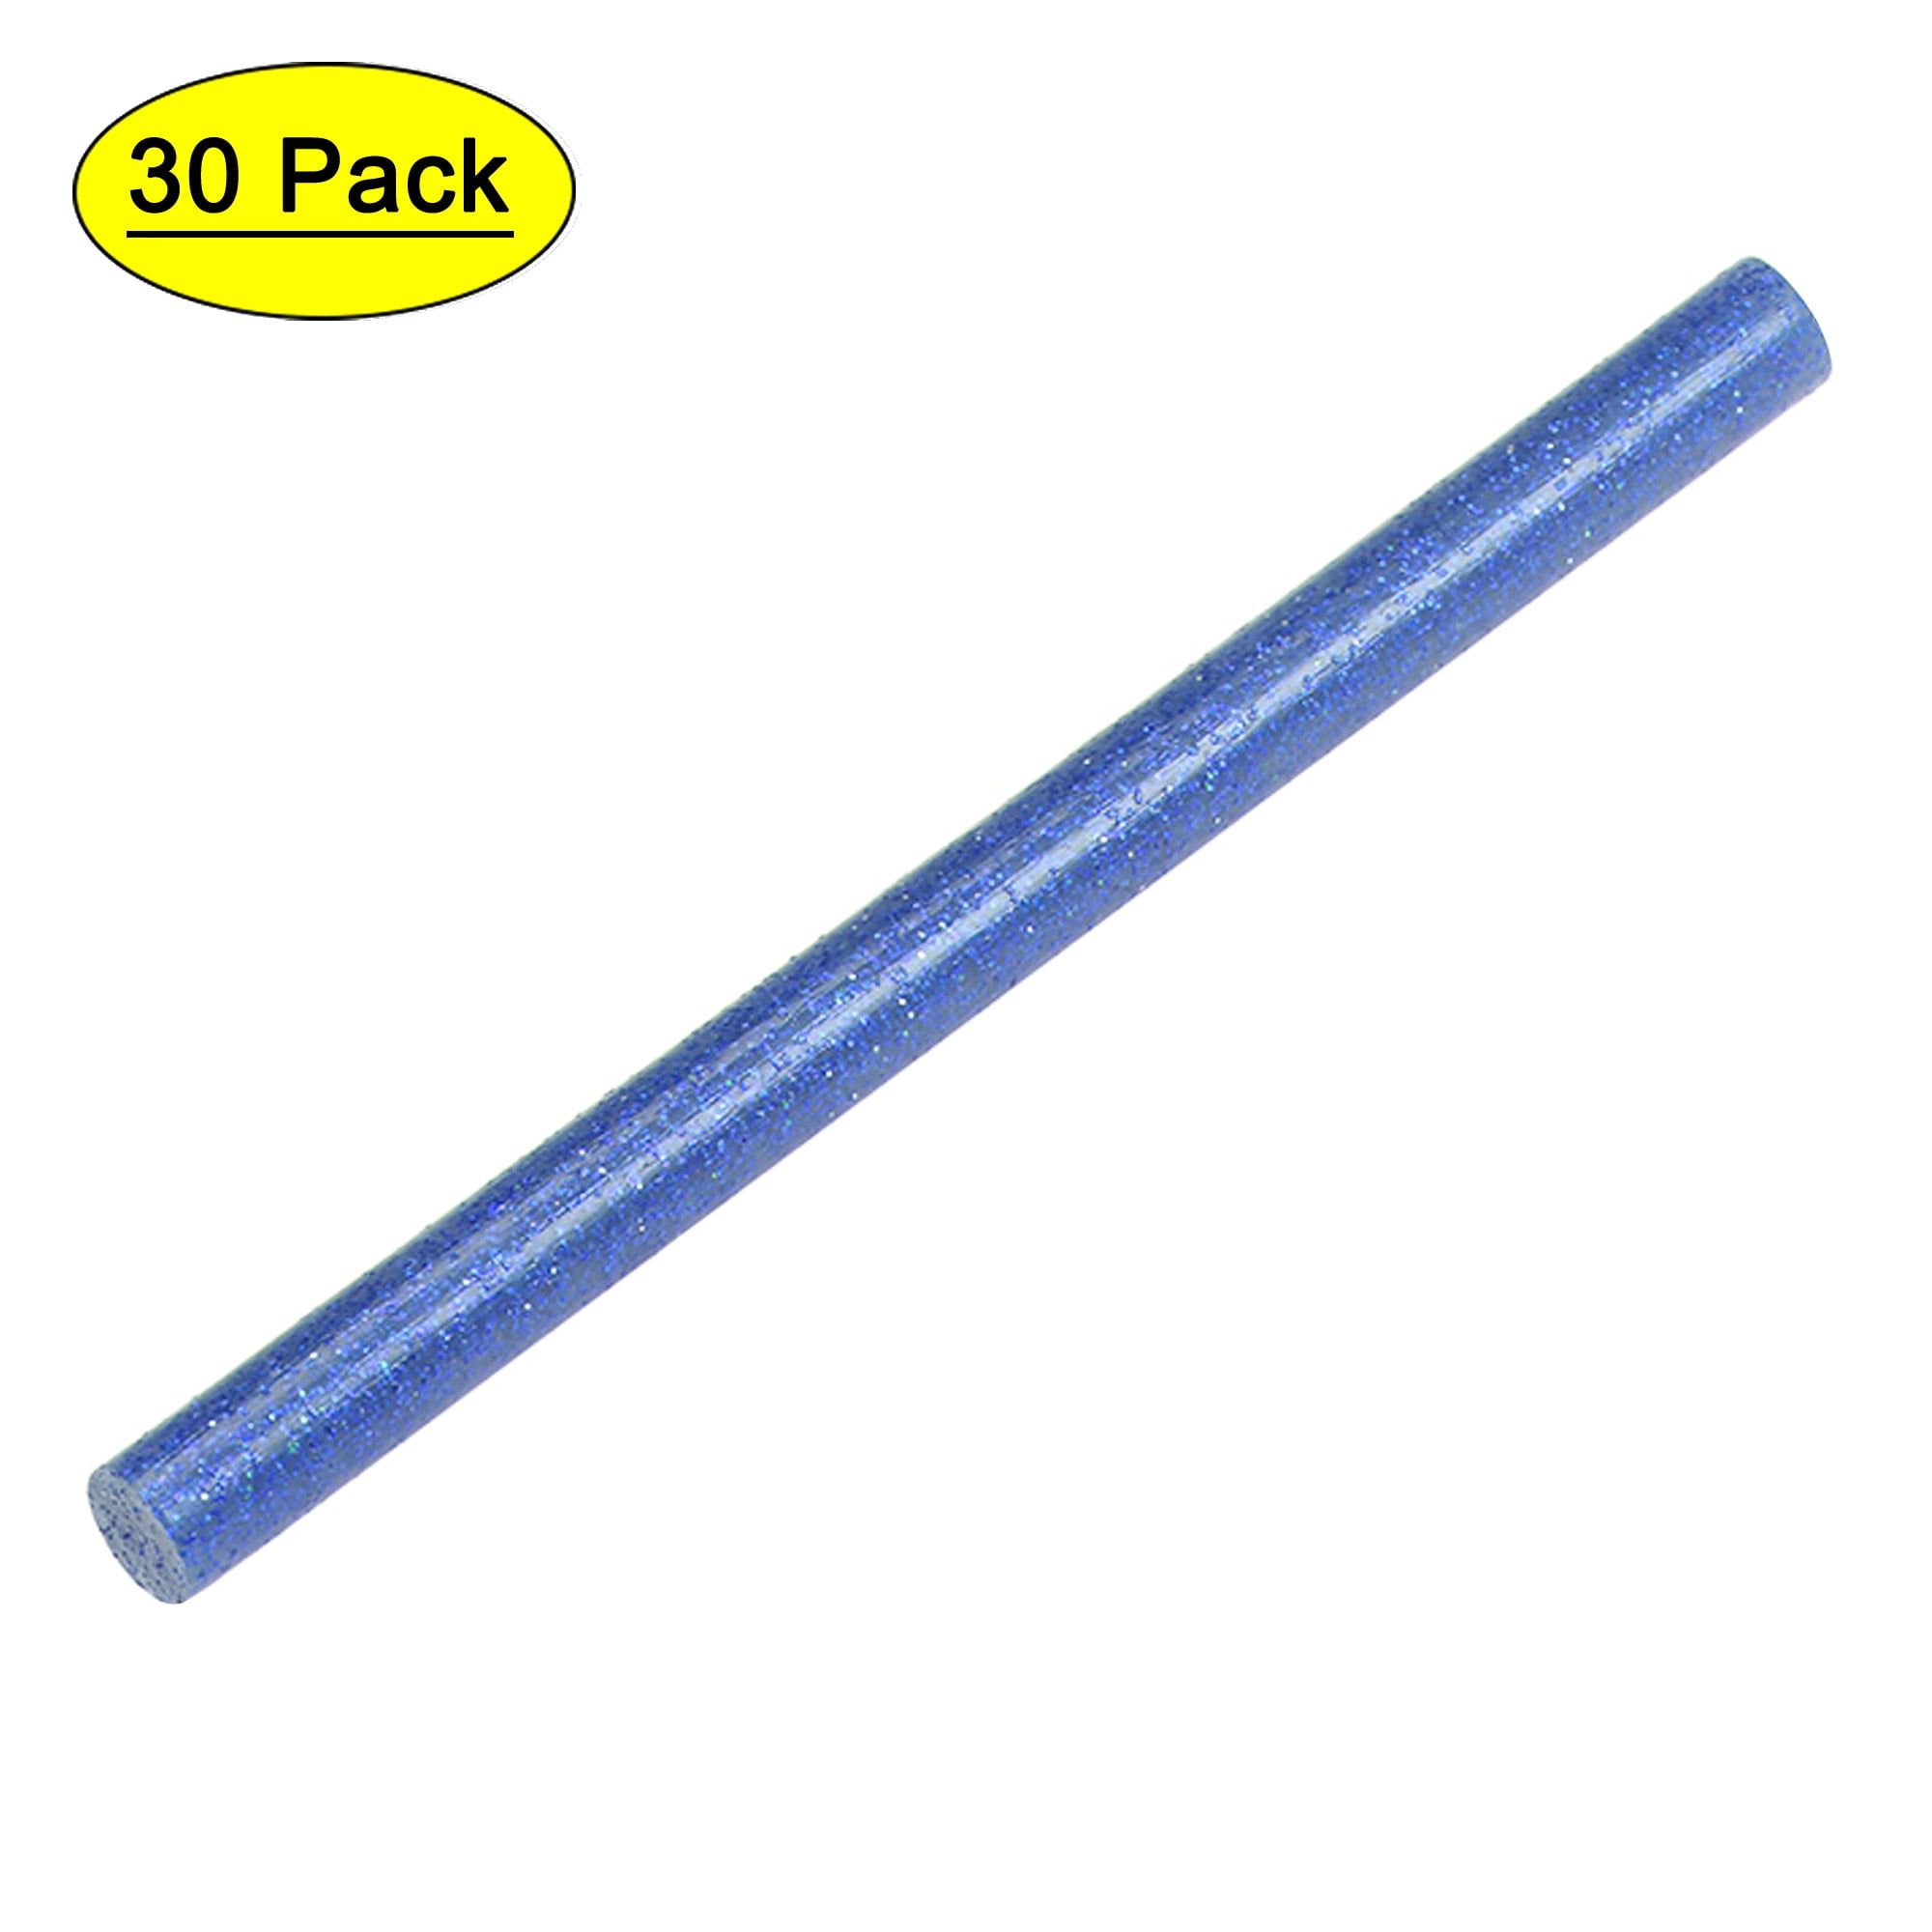  Mini Glue Gun Sticks, GoGonova 200 Pcs Clear Mini Glue Sticks,  0.27 Diameter and 4 Long Hot Melt Glue Sticks - Compatible with Most Mini  Glue Guns : Arts, Crafts & Sewing